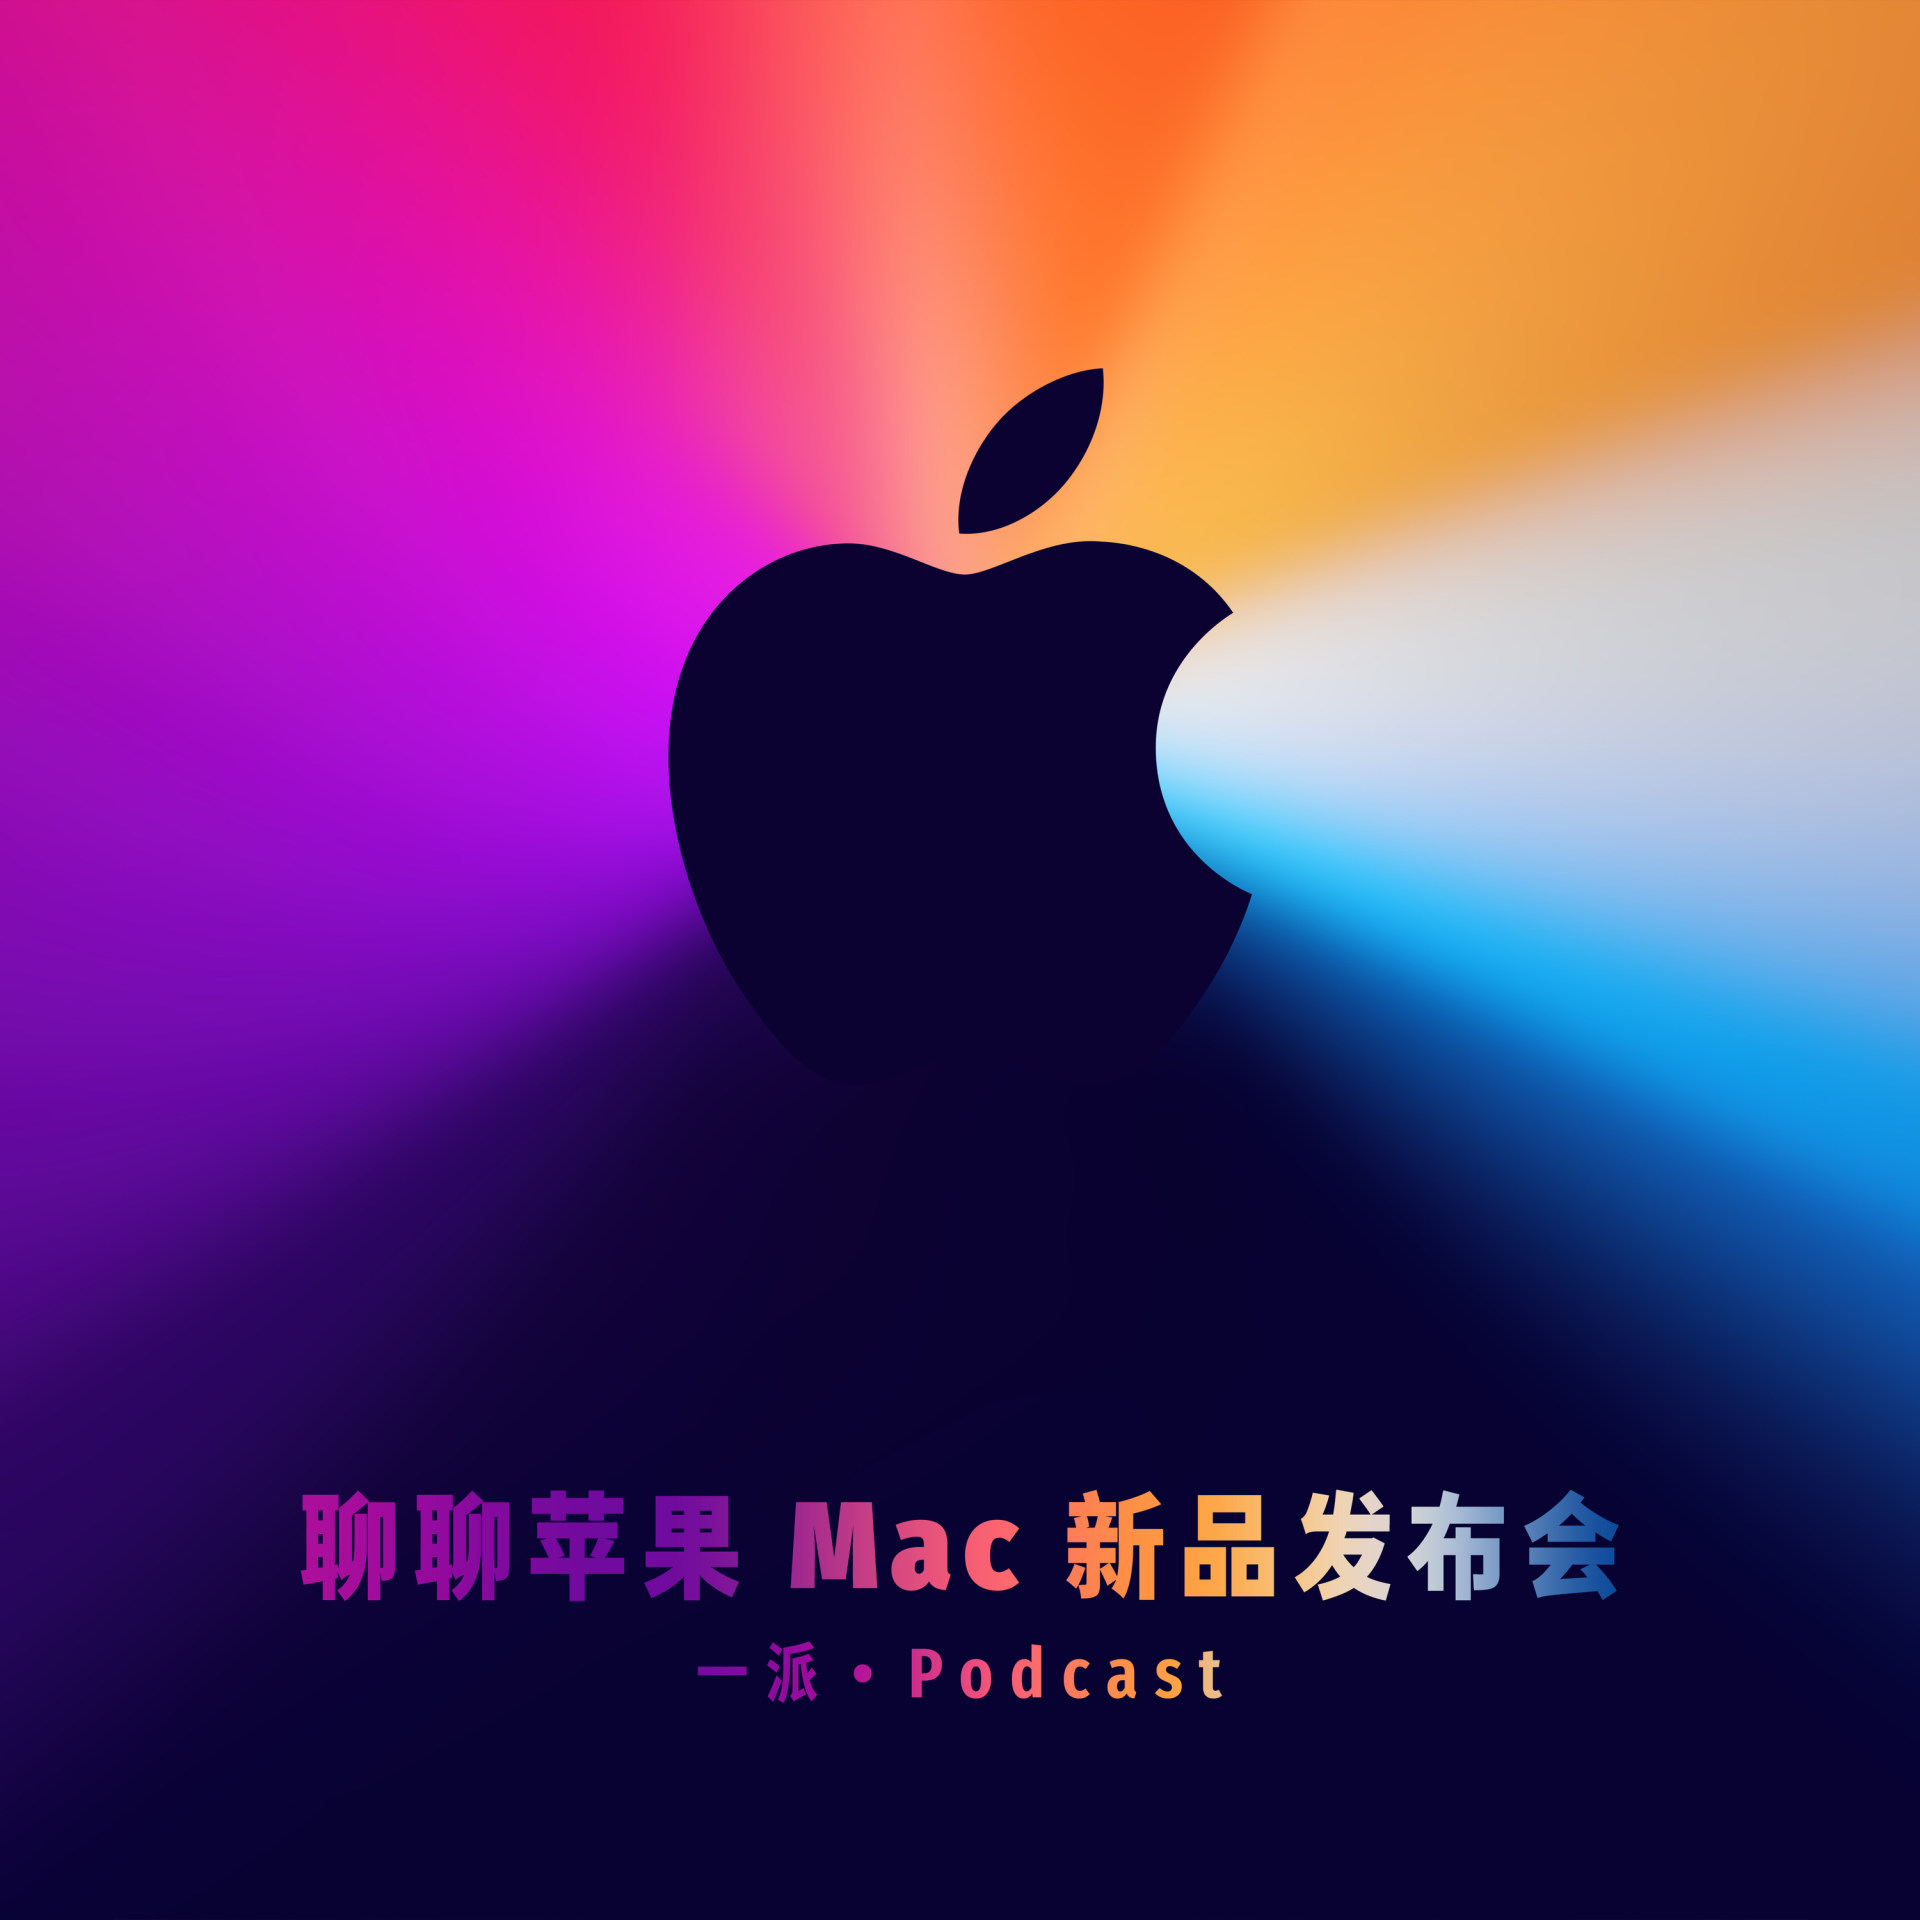 聊聊苹果 Mac 新品发布会，ARM 新时代的启幕